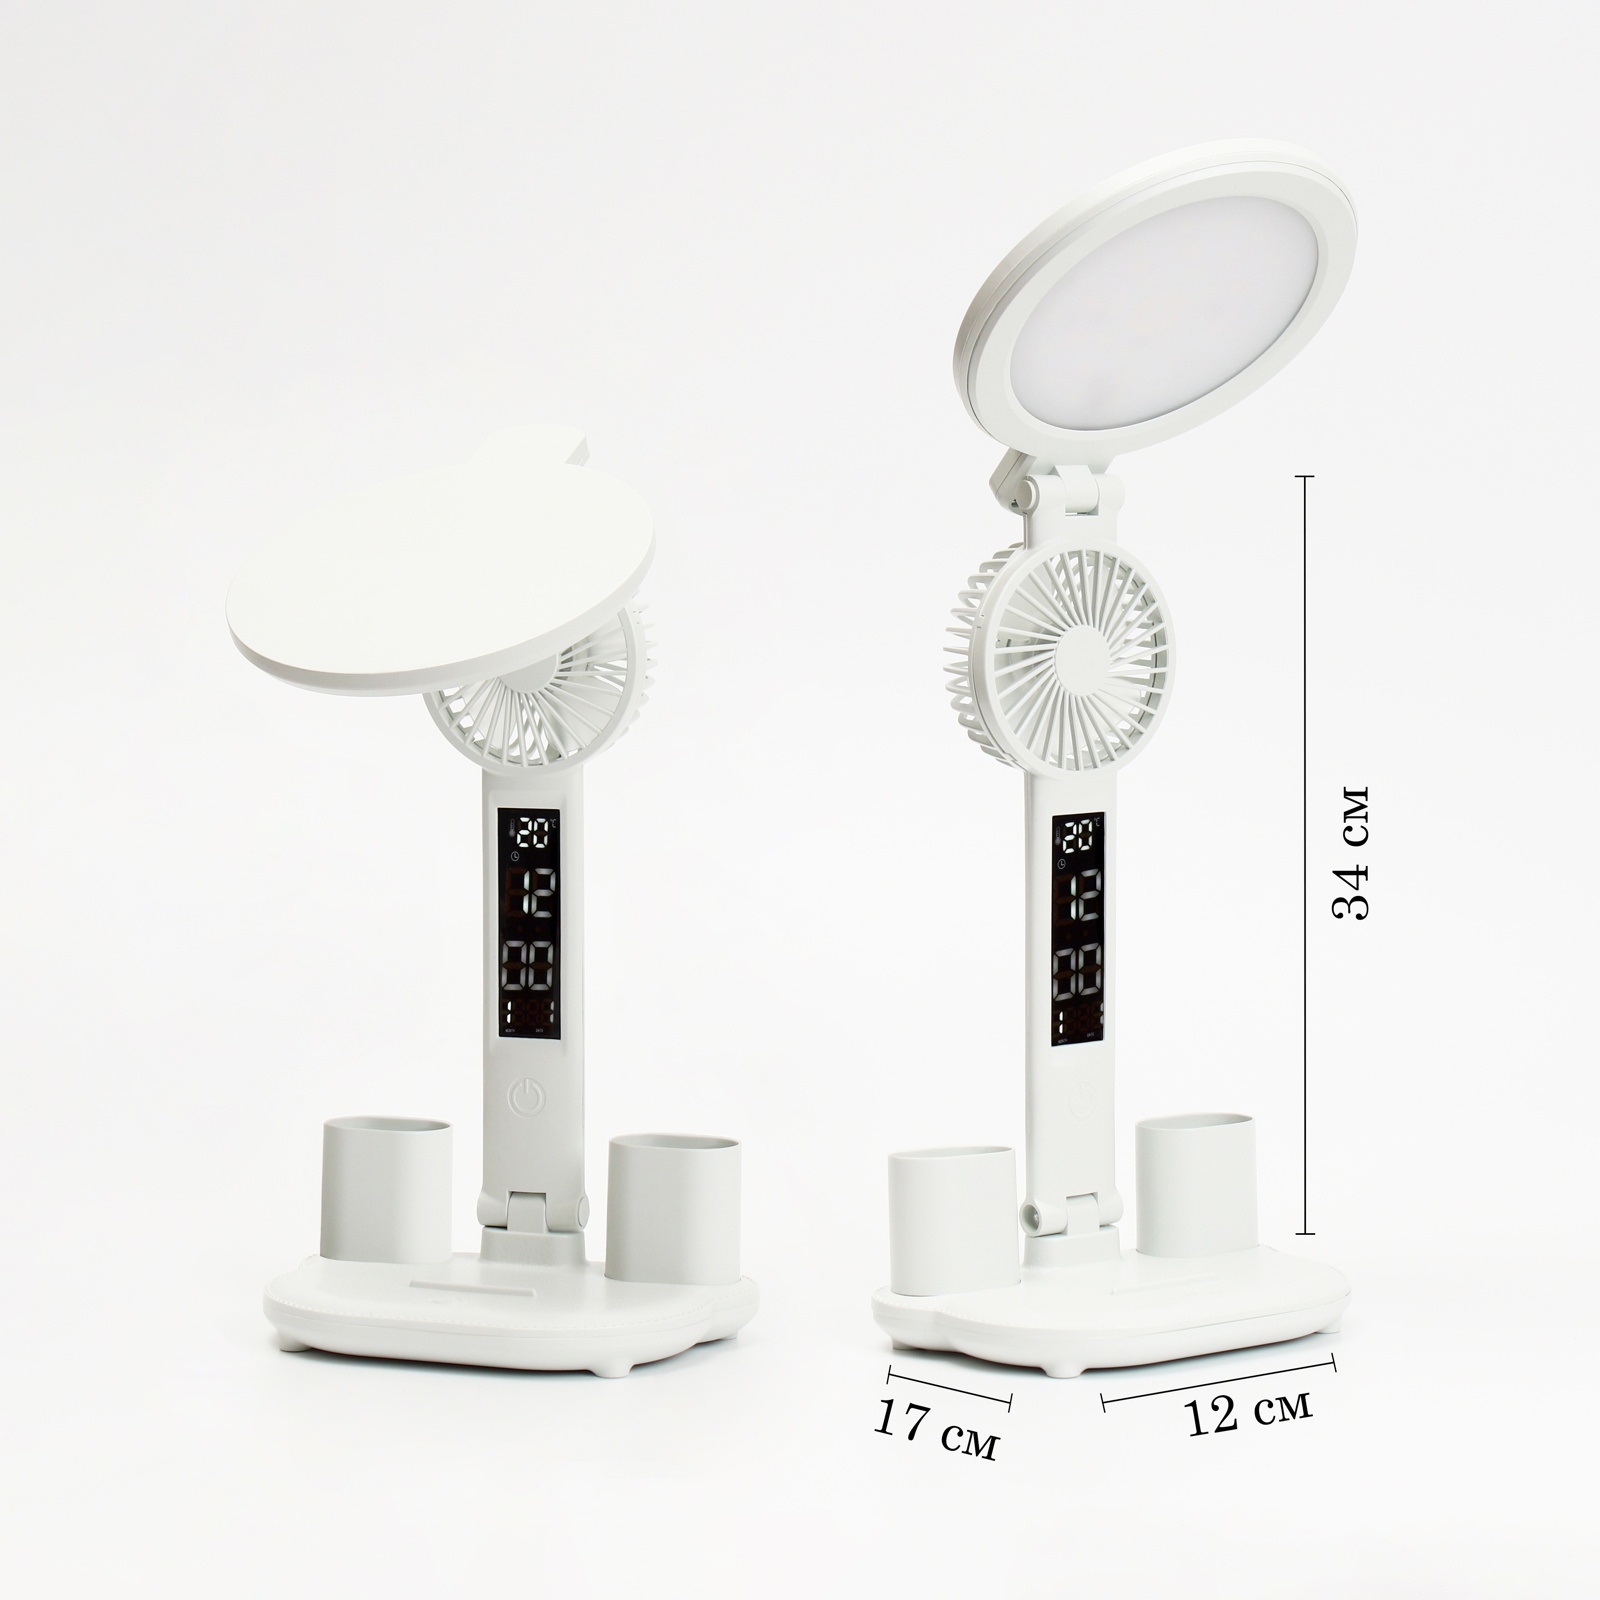 Настольная лампа - часы - календарь, термометр, органайзер, вентилятор, 7 Вт, 3 режима, USB